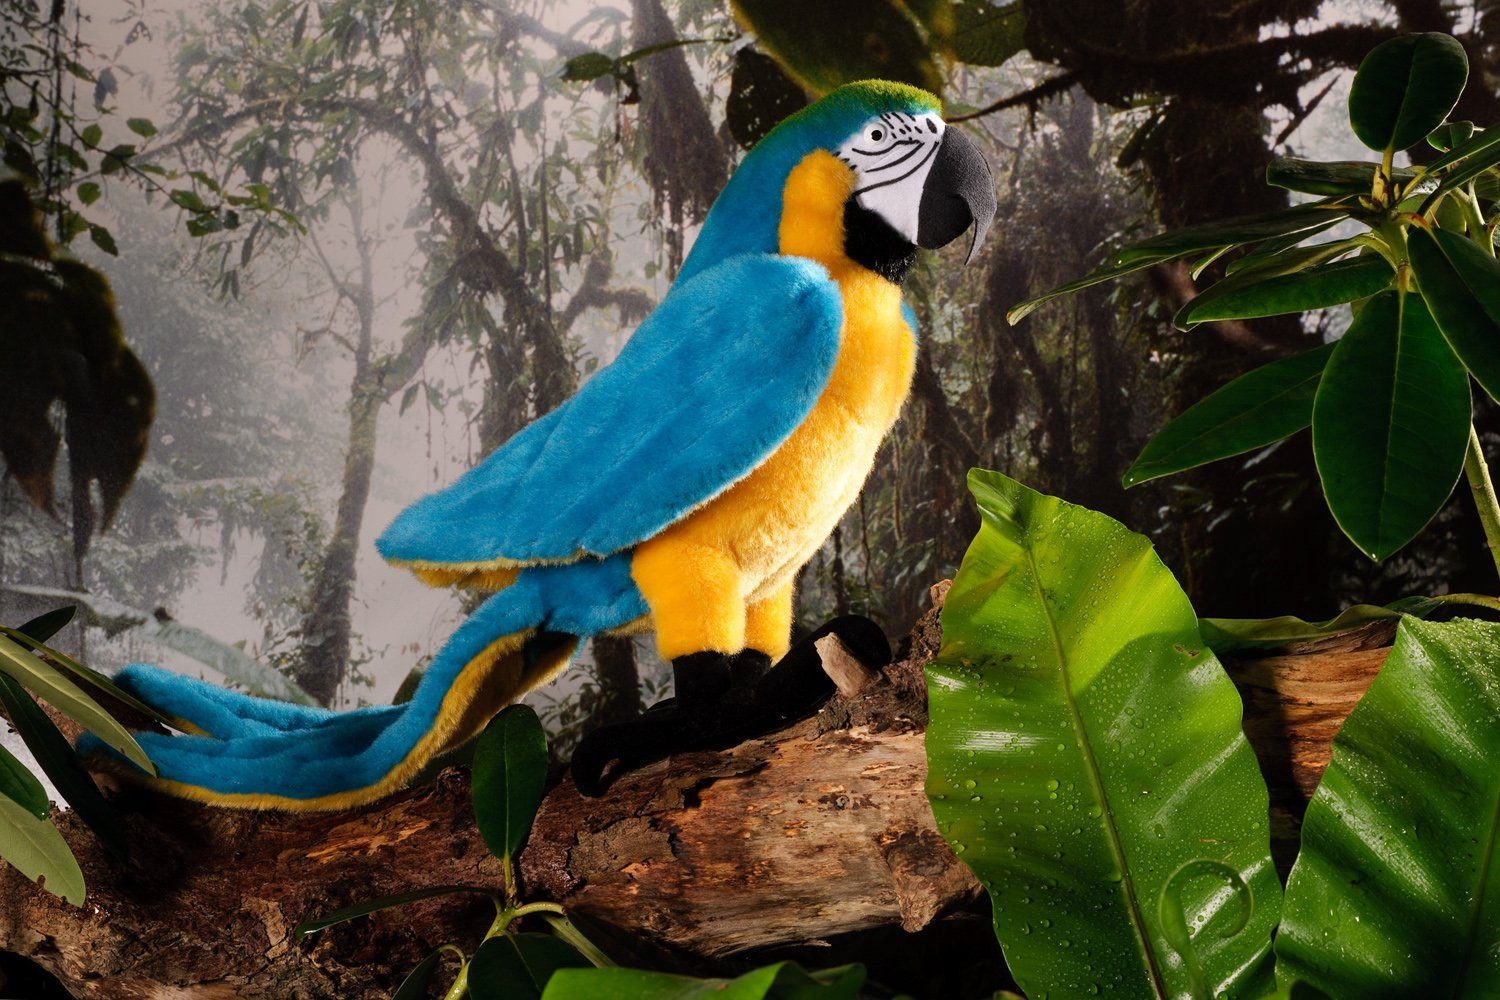 Plüschtier Kuscheltier Stoff Tier Papagei blau Vogel sitzend 15 cm 